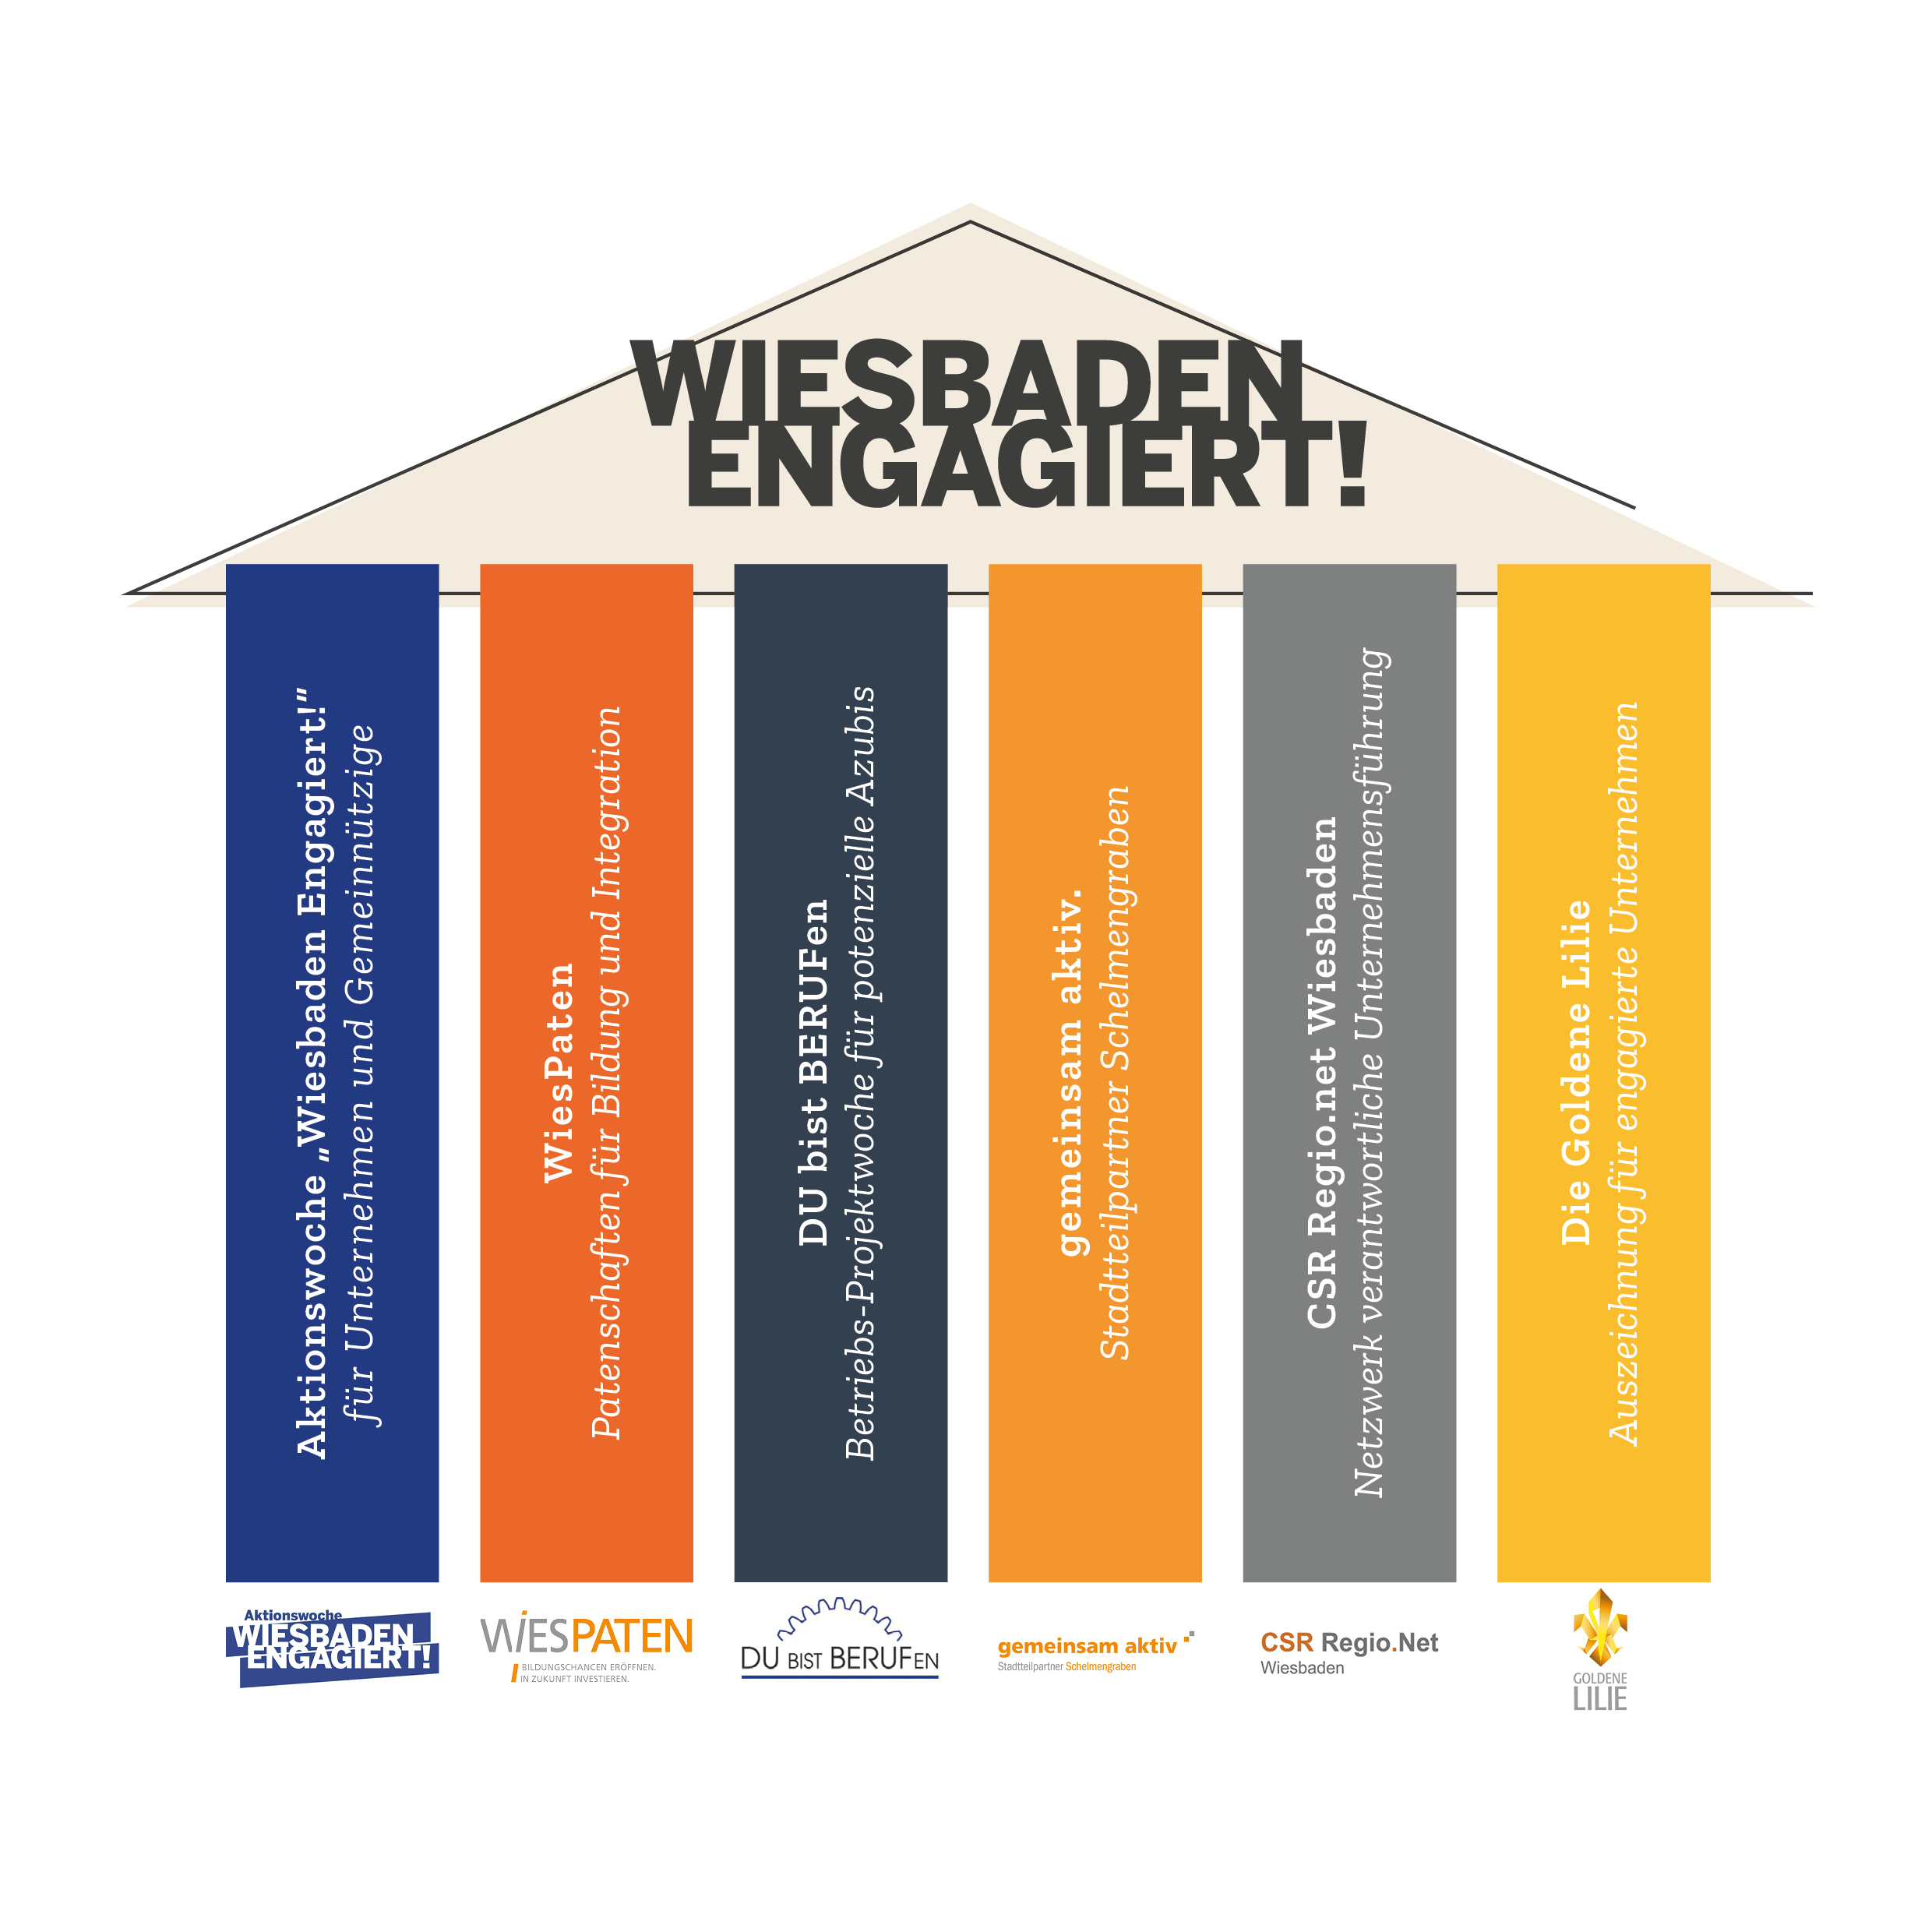 Grafik zeigt die Dachmarke "Wiesbaden Engagiert!" als Dach mit 6 Säulen